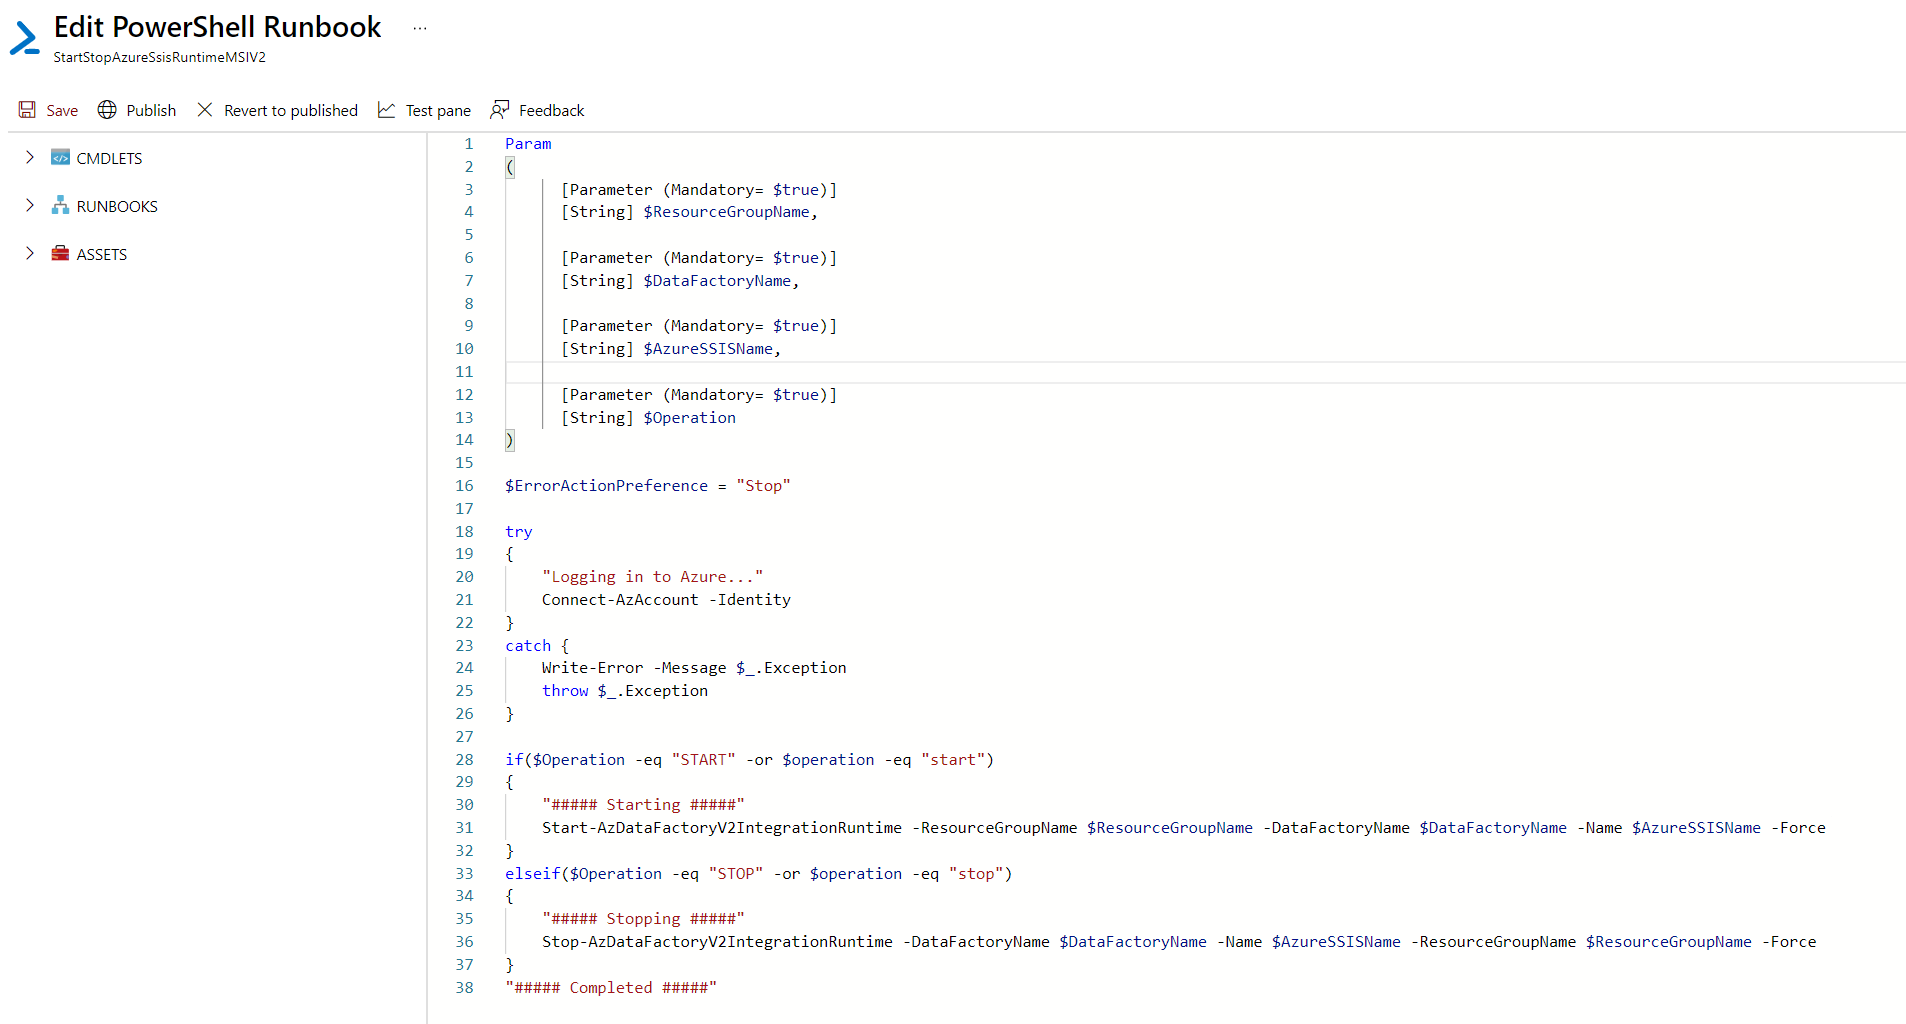 Captura de tela da interface para editar um runbook do PowerShell.